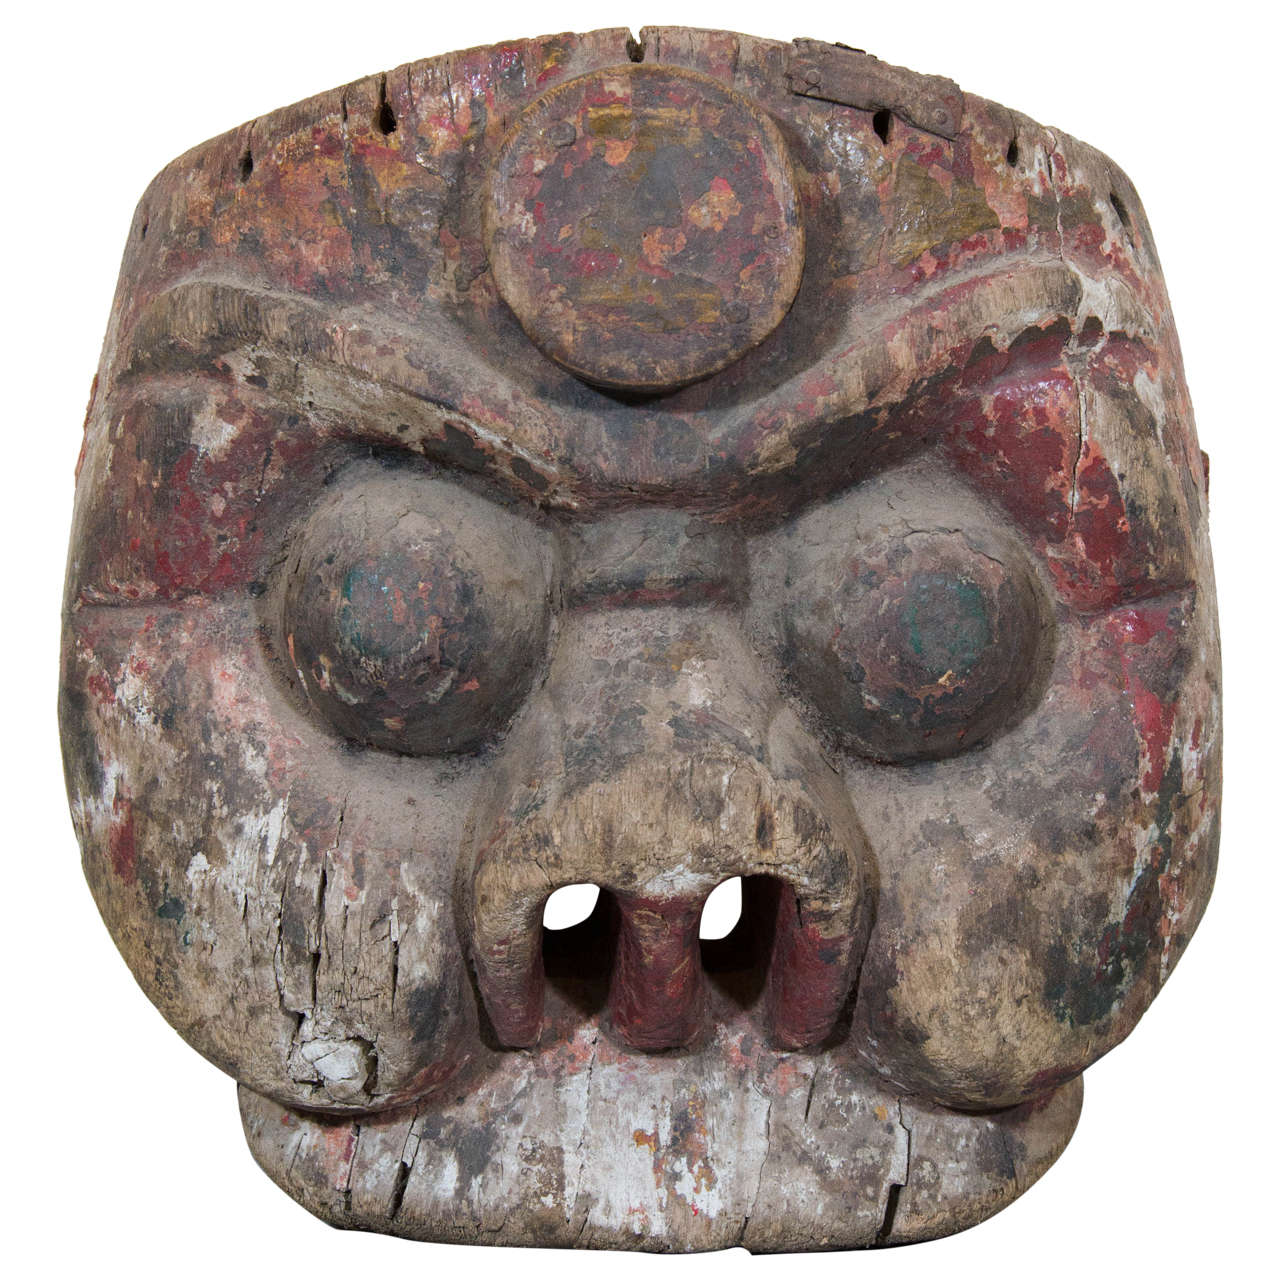 Chinesische Maske des 19. Jahrhunderts